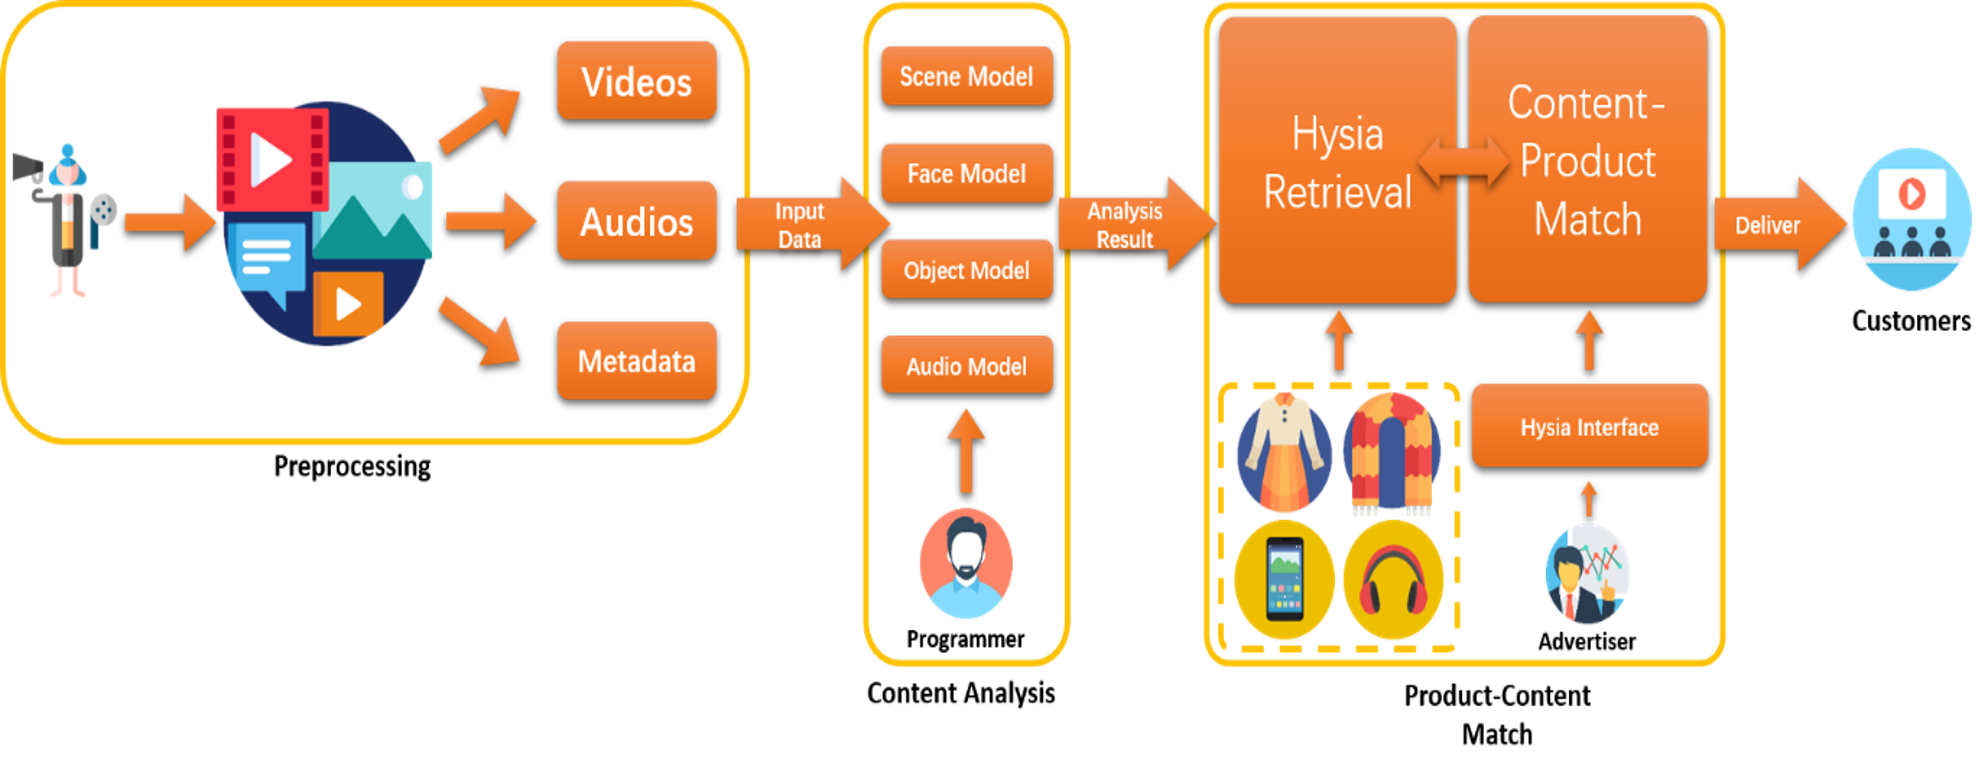 hysia-block-diagram.png